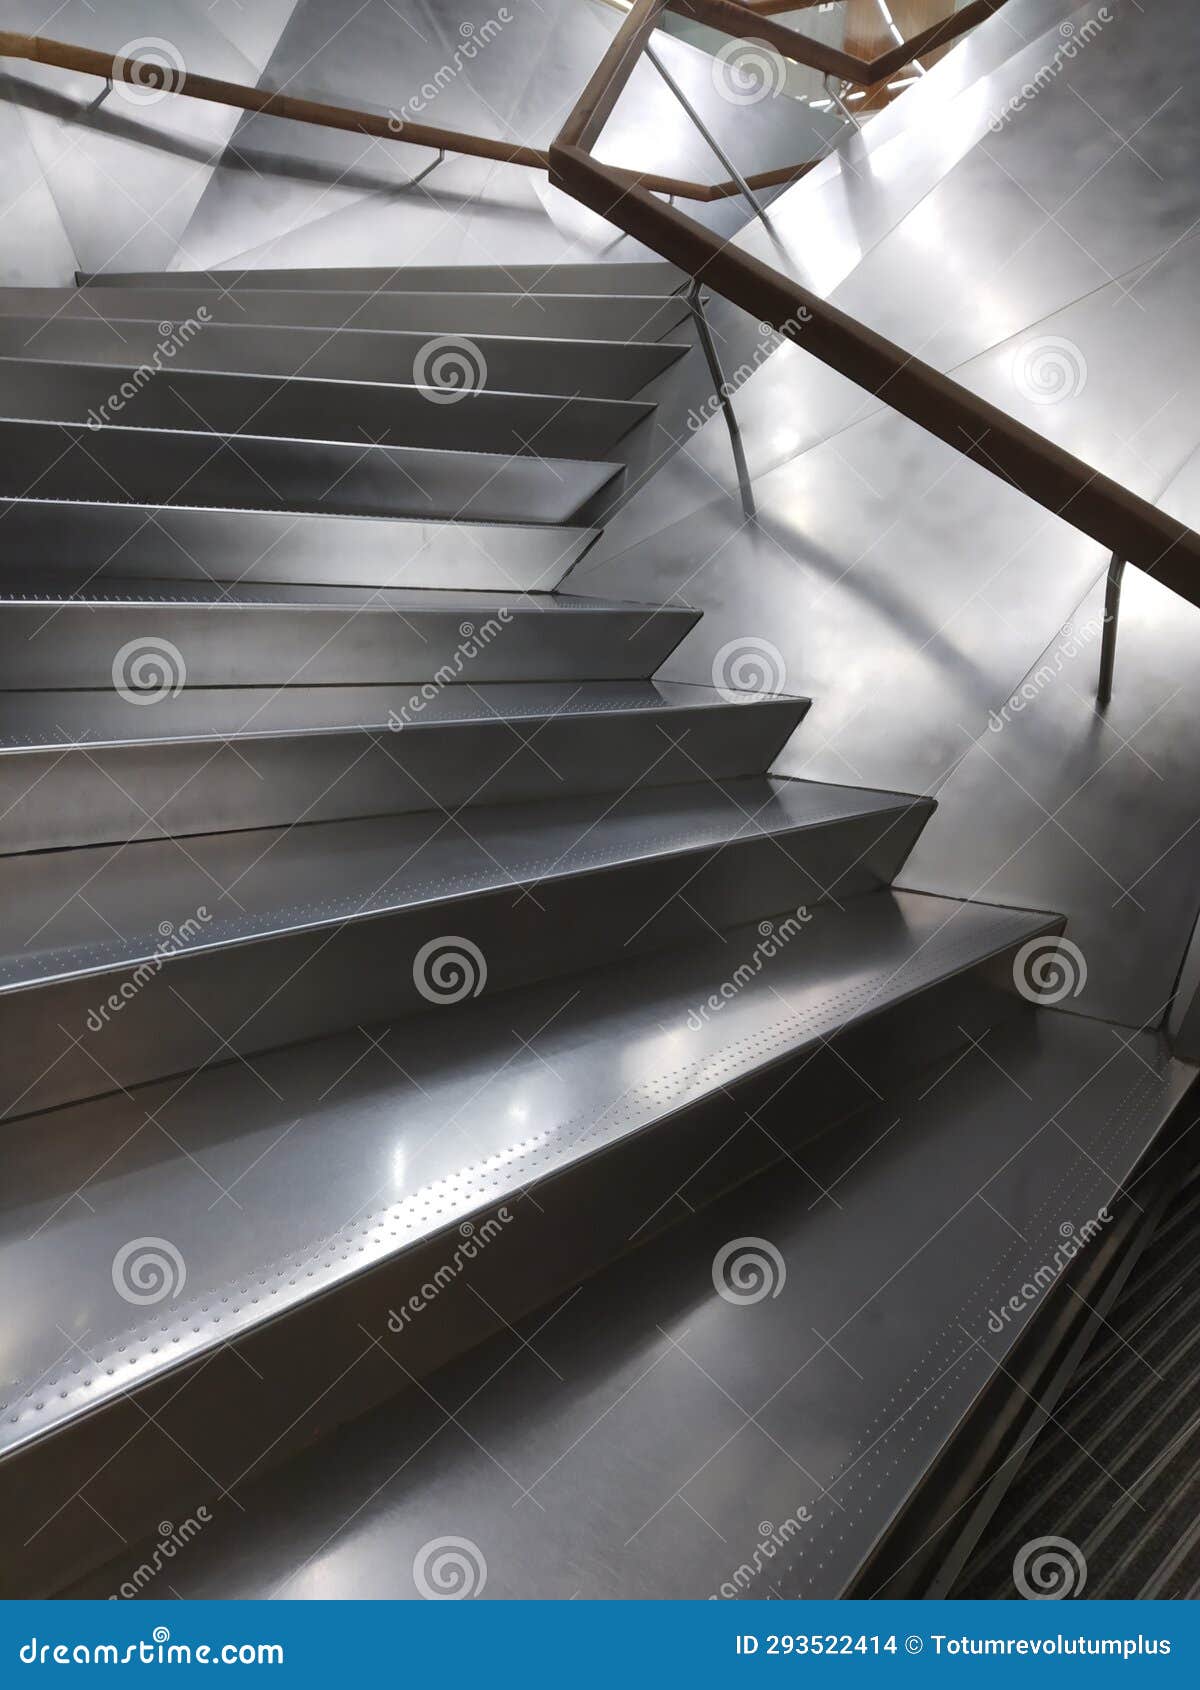 futuristic aluminum stairs, la caixa fundation, madrid